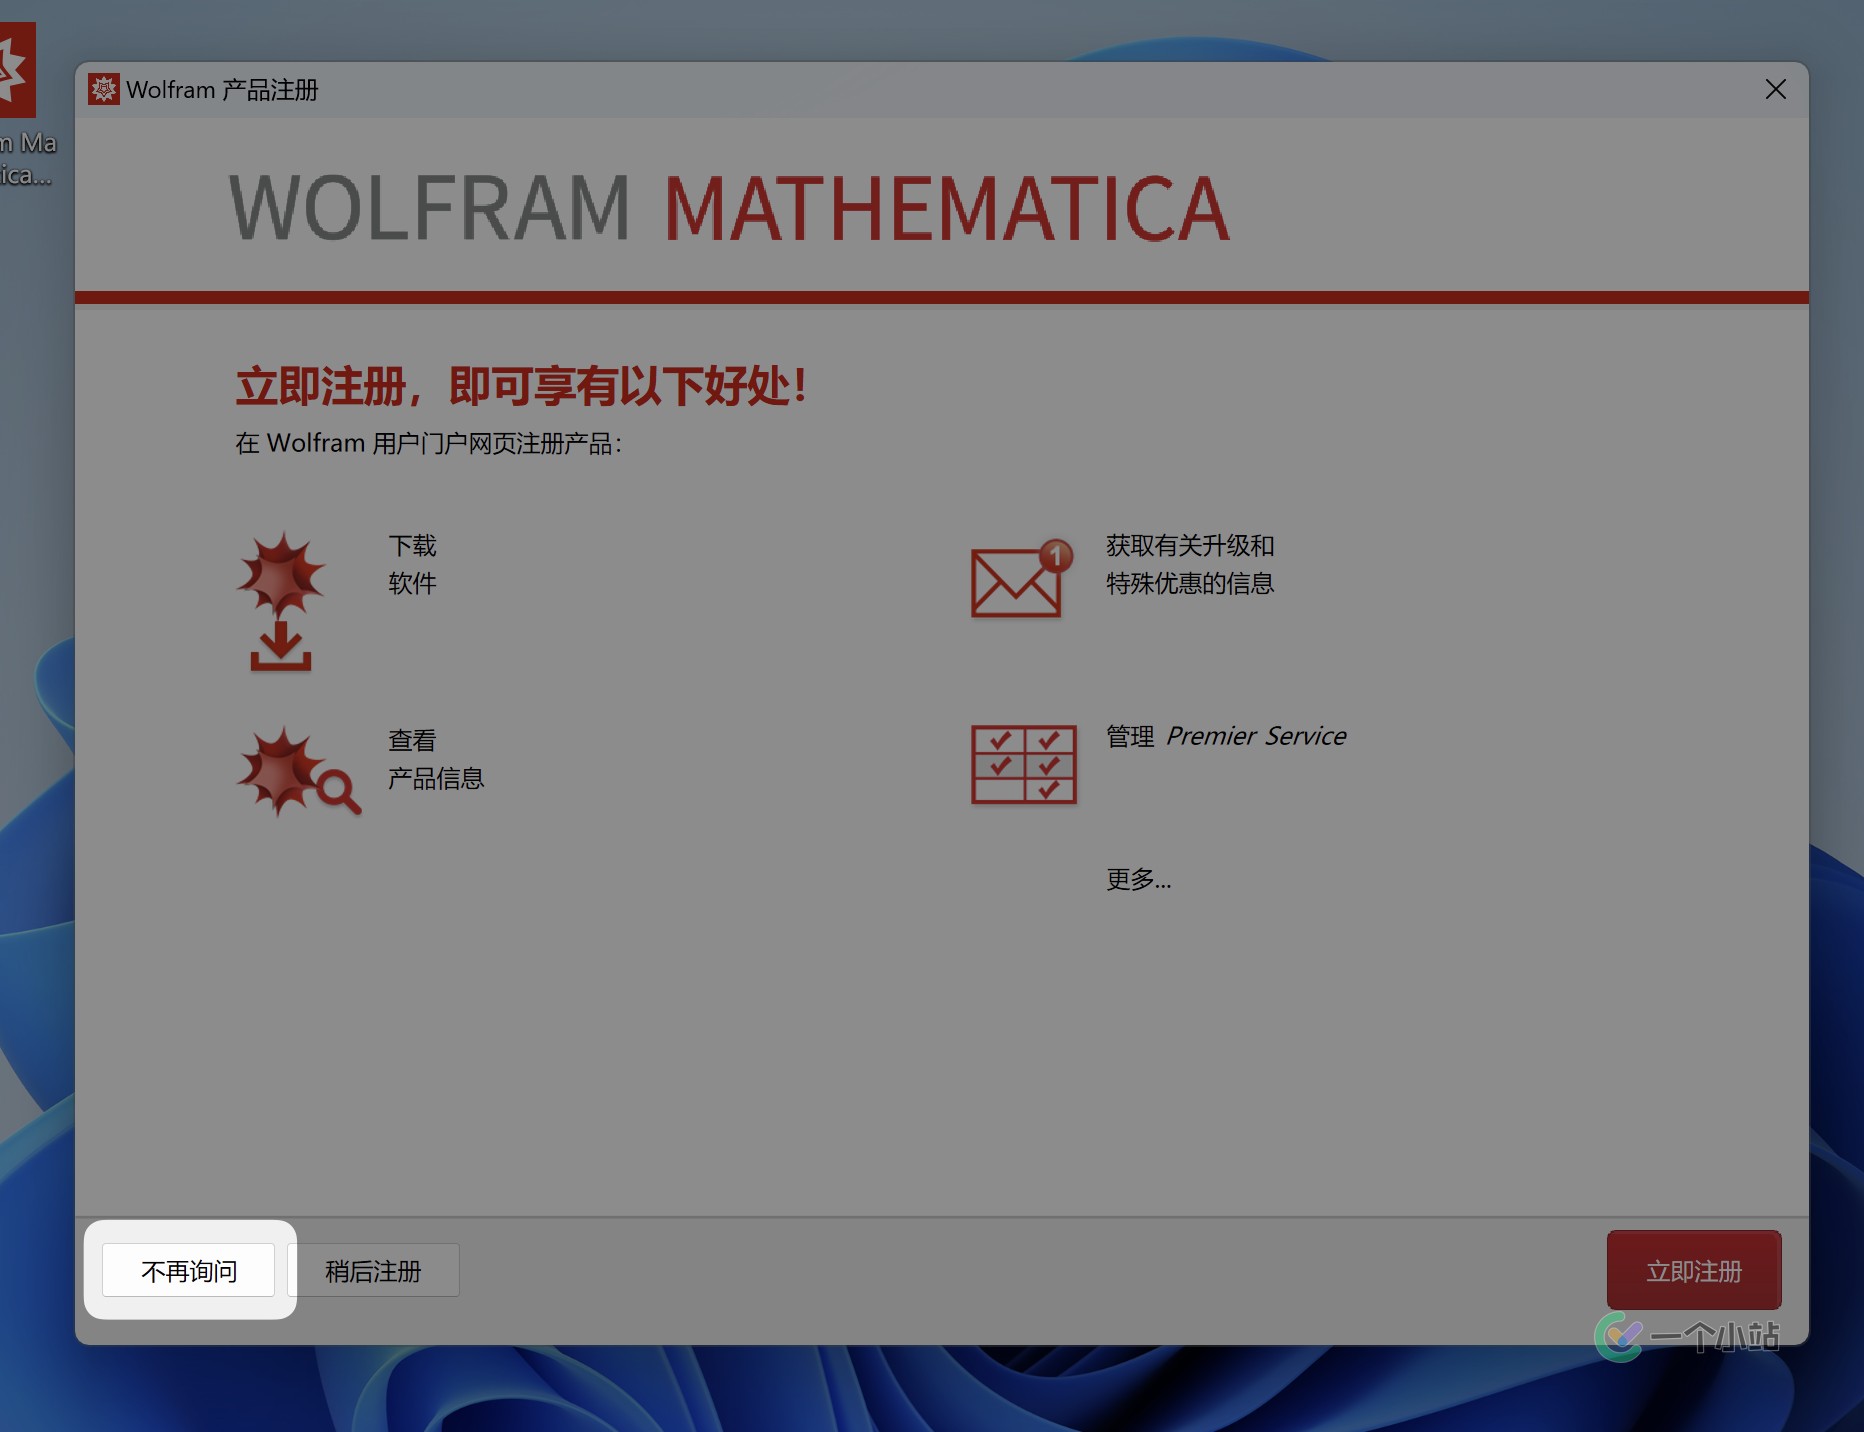 「互联网速记」也许是最优雅的 Wolfram Mathematica 破解方式 - 9